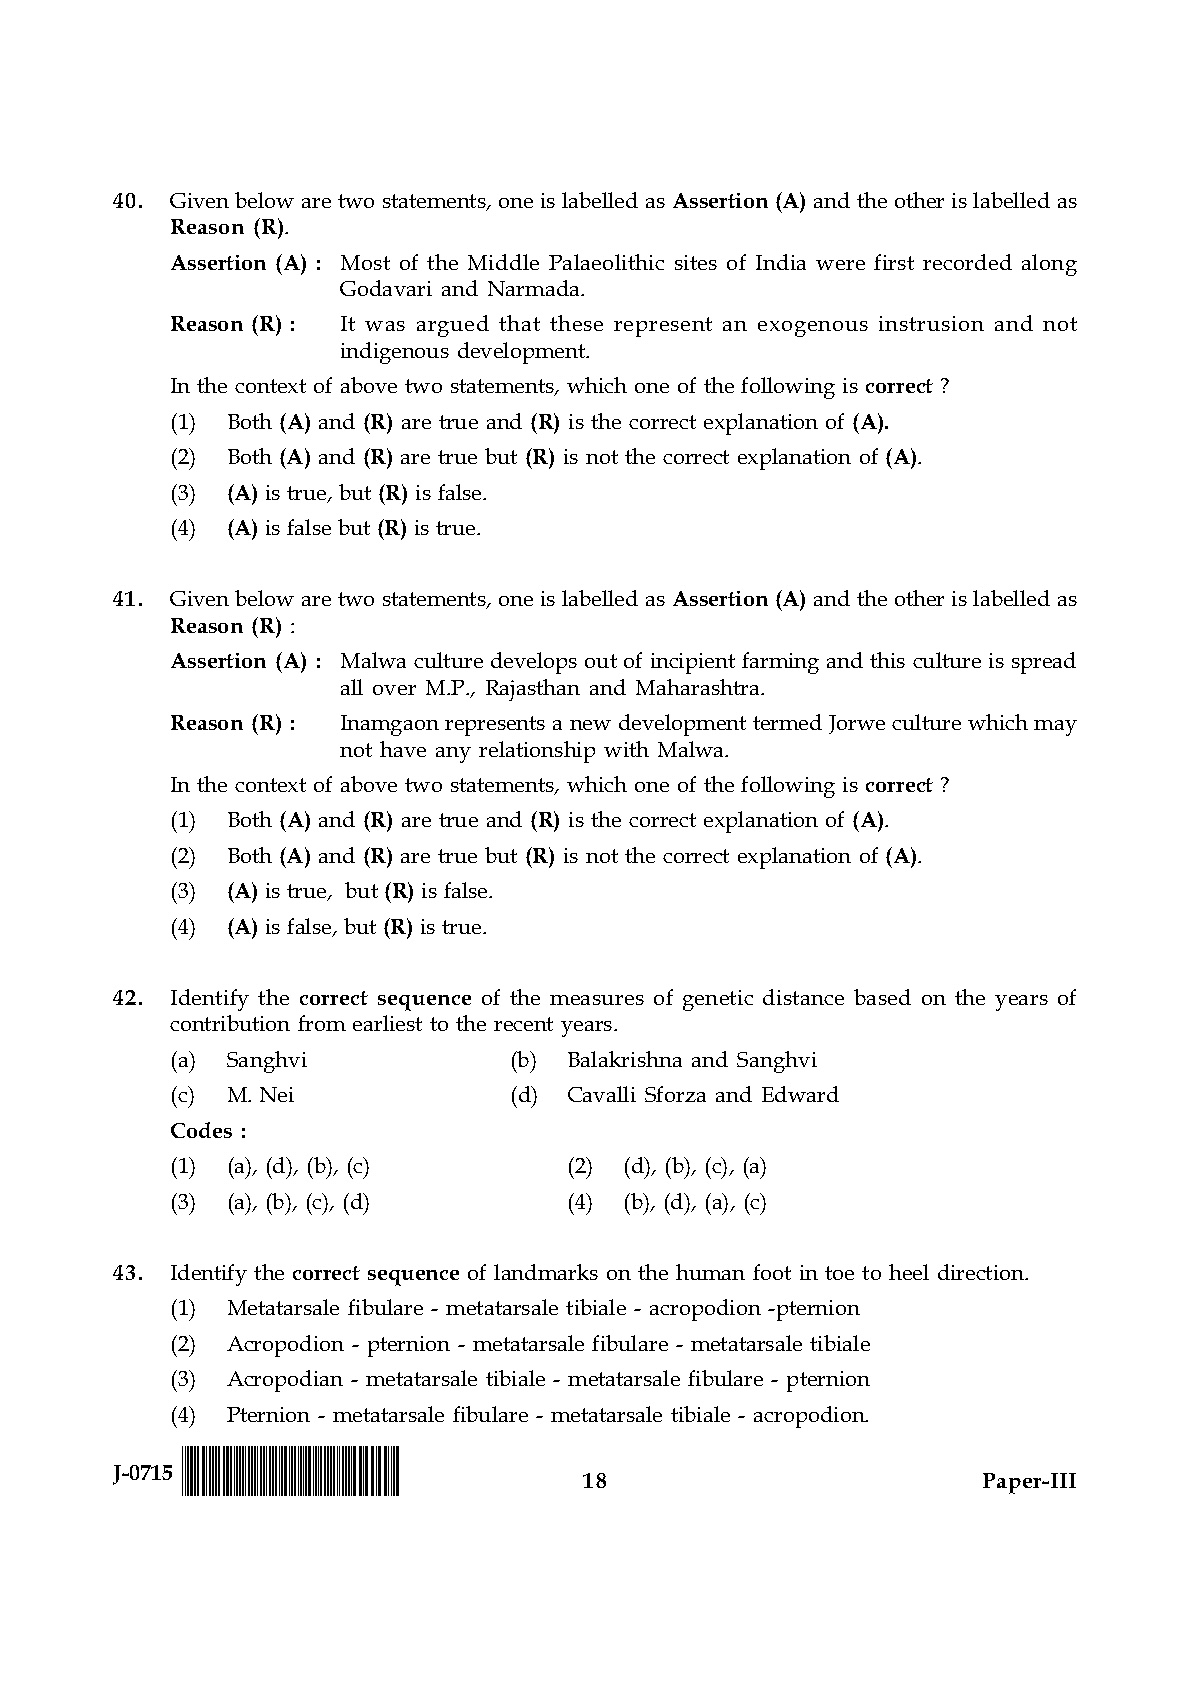 UGC NET Anthropology Question Paper III June 2015 18